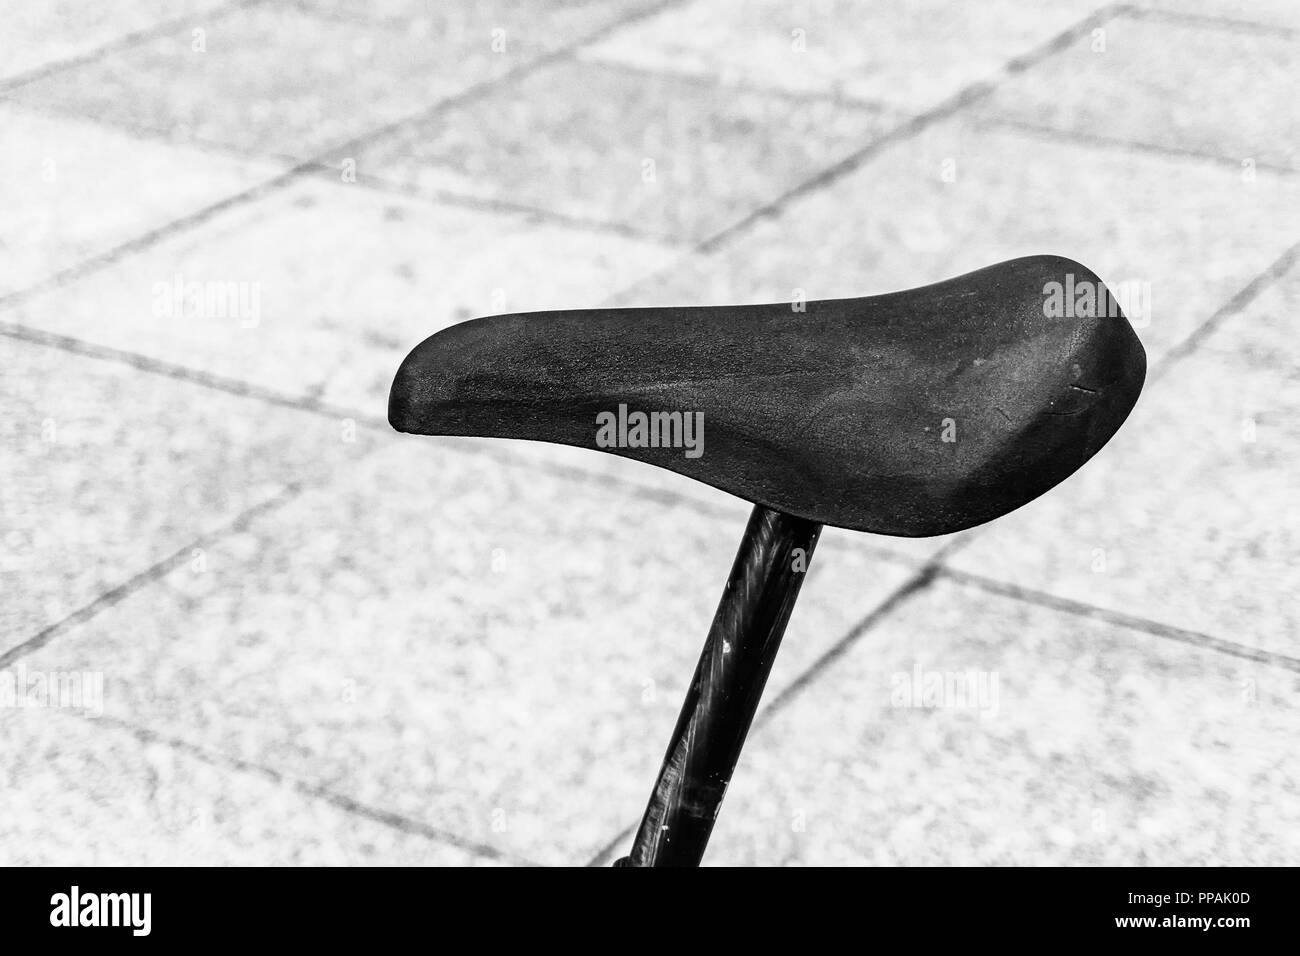 Berlín, Alemania, 22 de septiembre de 2018: Primer plano del sillín de bicicleta moderna contra el piso de baldosas. Foto de stock